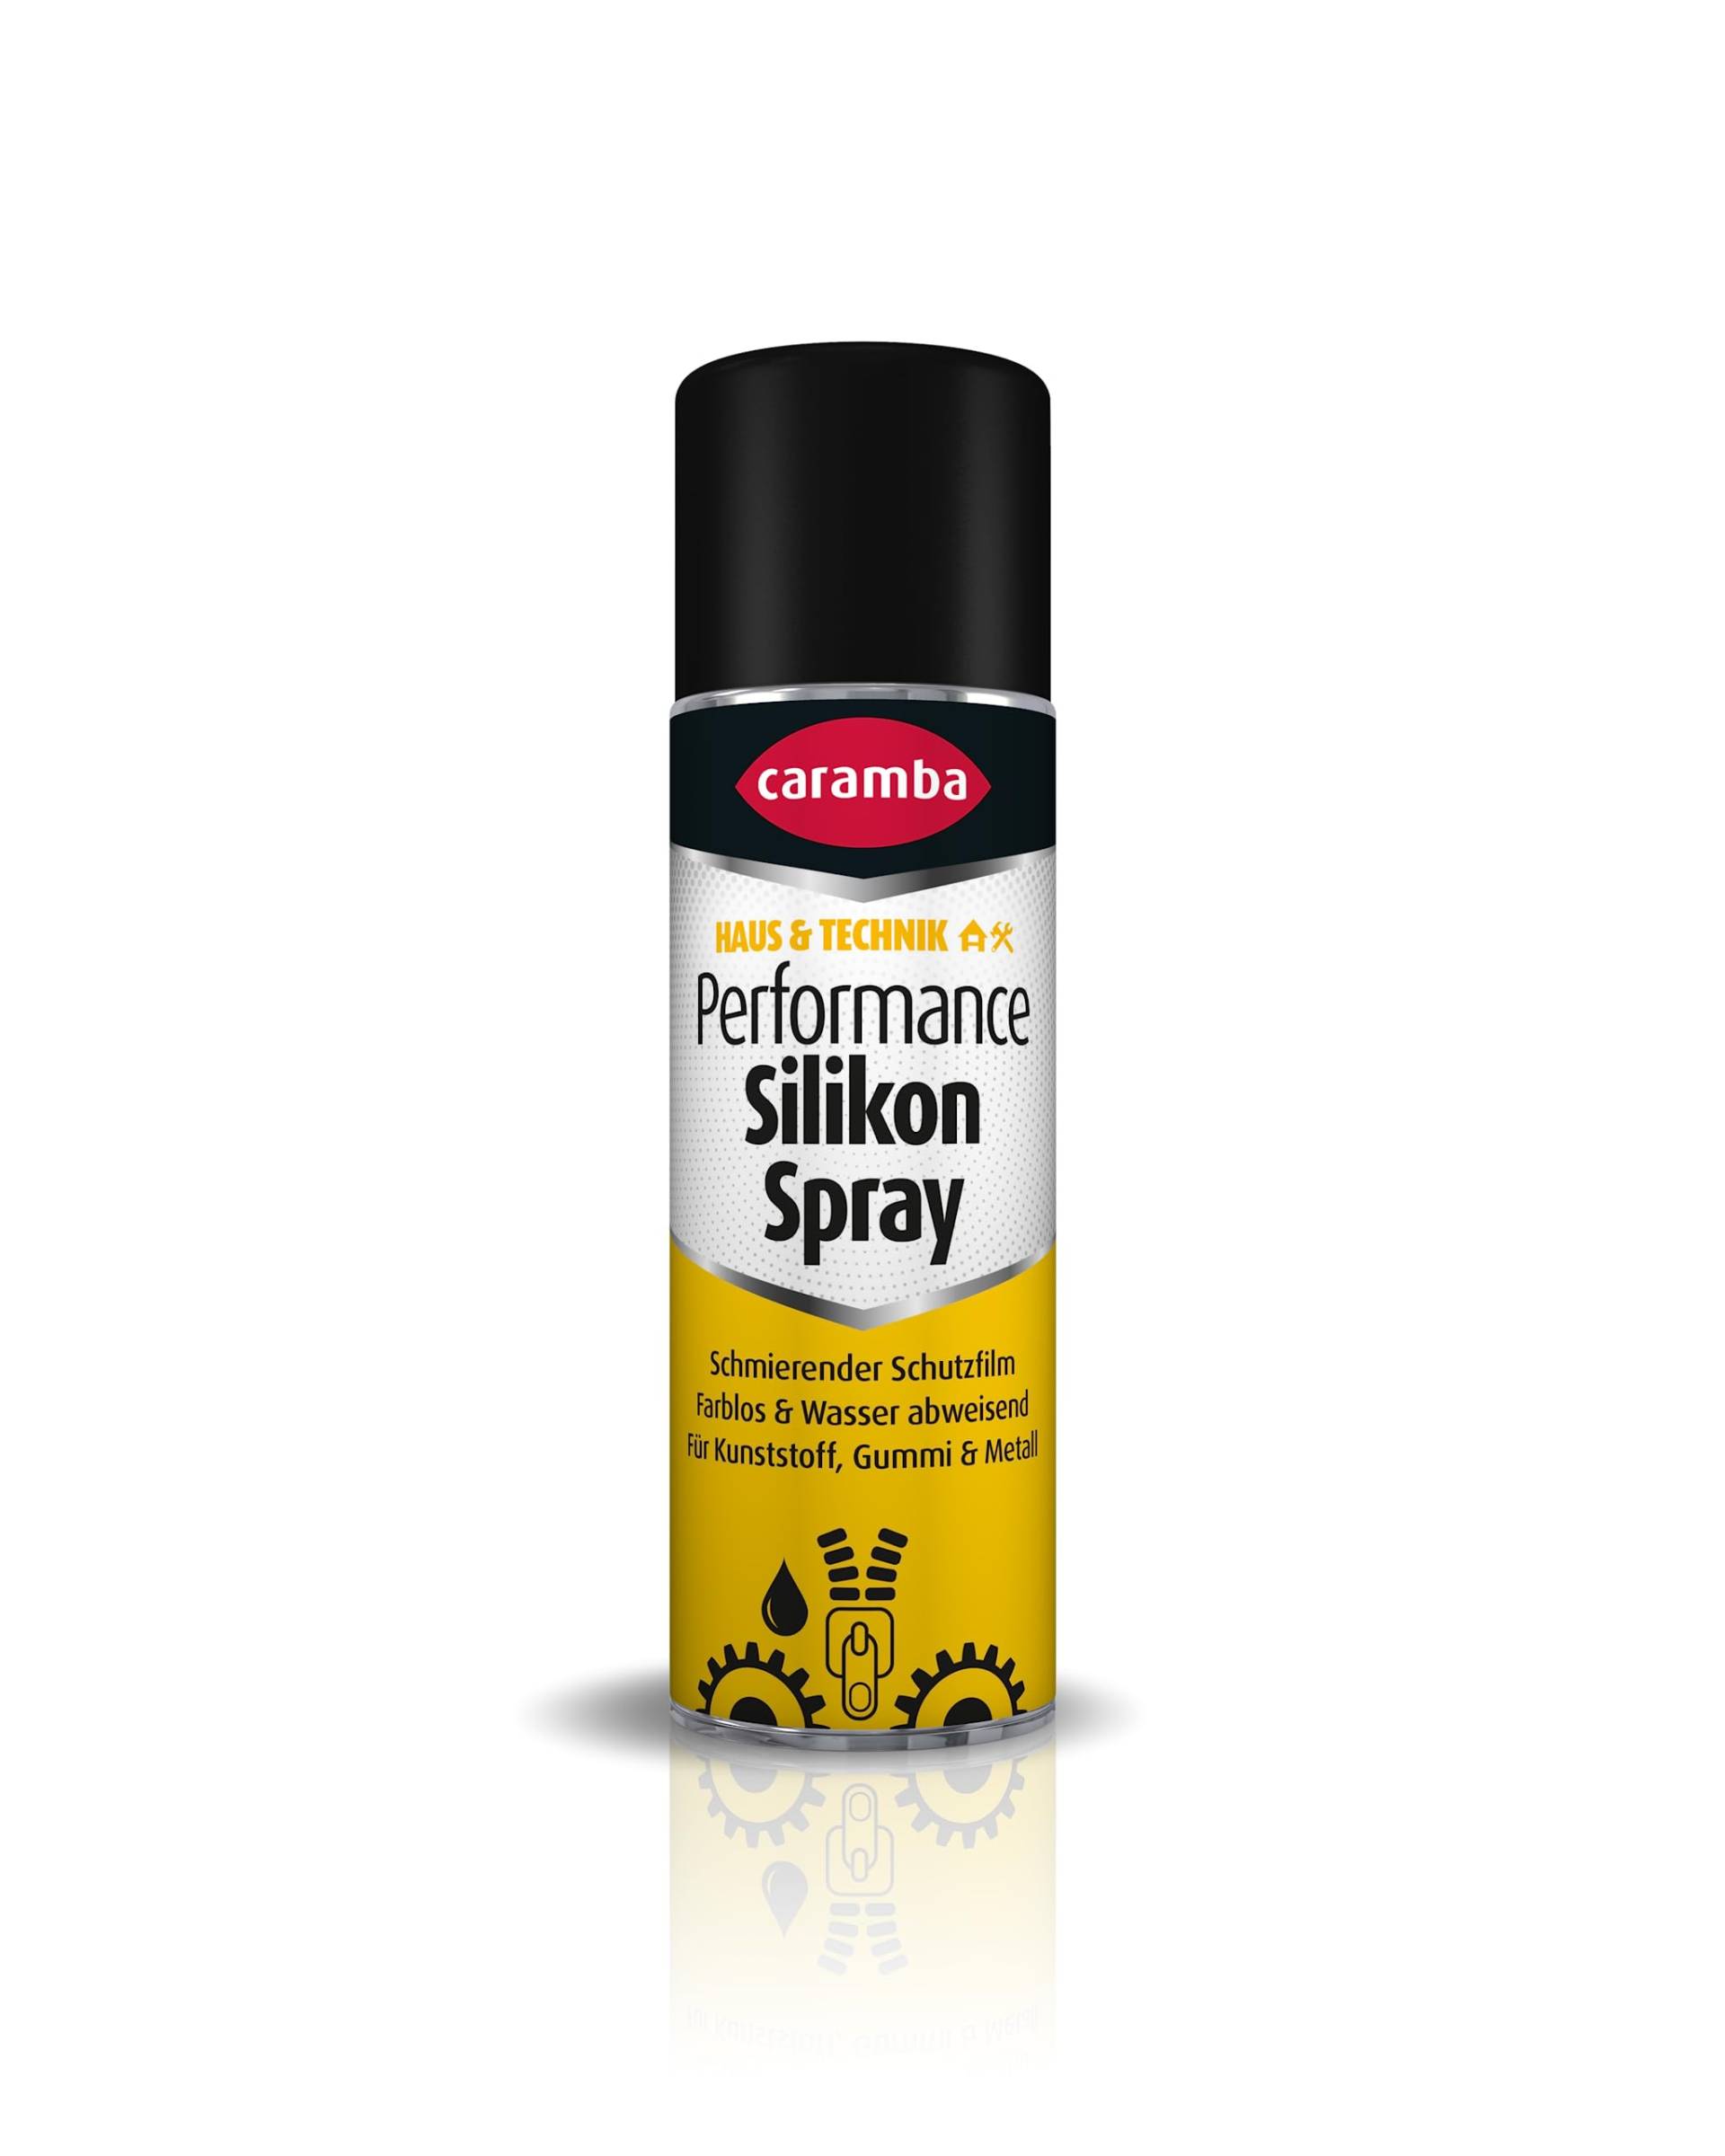 Caramba Performance Silikon Spray (300 ml) – Silikonspray schützt, pflegt und schmiert in nur einem Arbeitsgang – farbloses und geruchsarmes Schmiermittel für Metall, Kunststoff und Gummi von Caramba